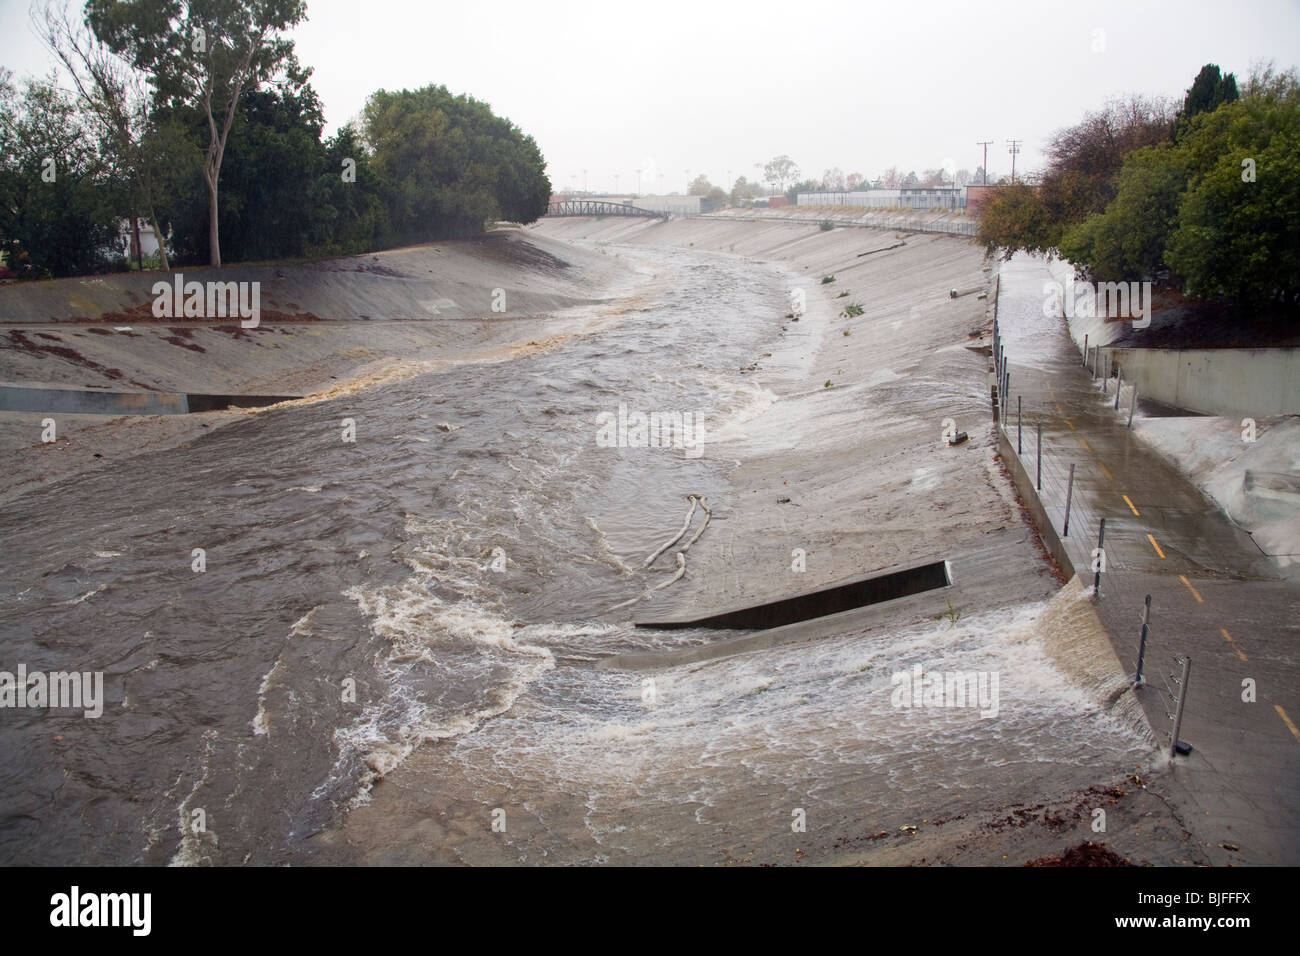 L'eau de pluie se déverse des tuyaux dans le ruisseau Ballona, neuf mille d'eau qui draine le bassin de Los Angeles. Culver City Banque D'Images